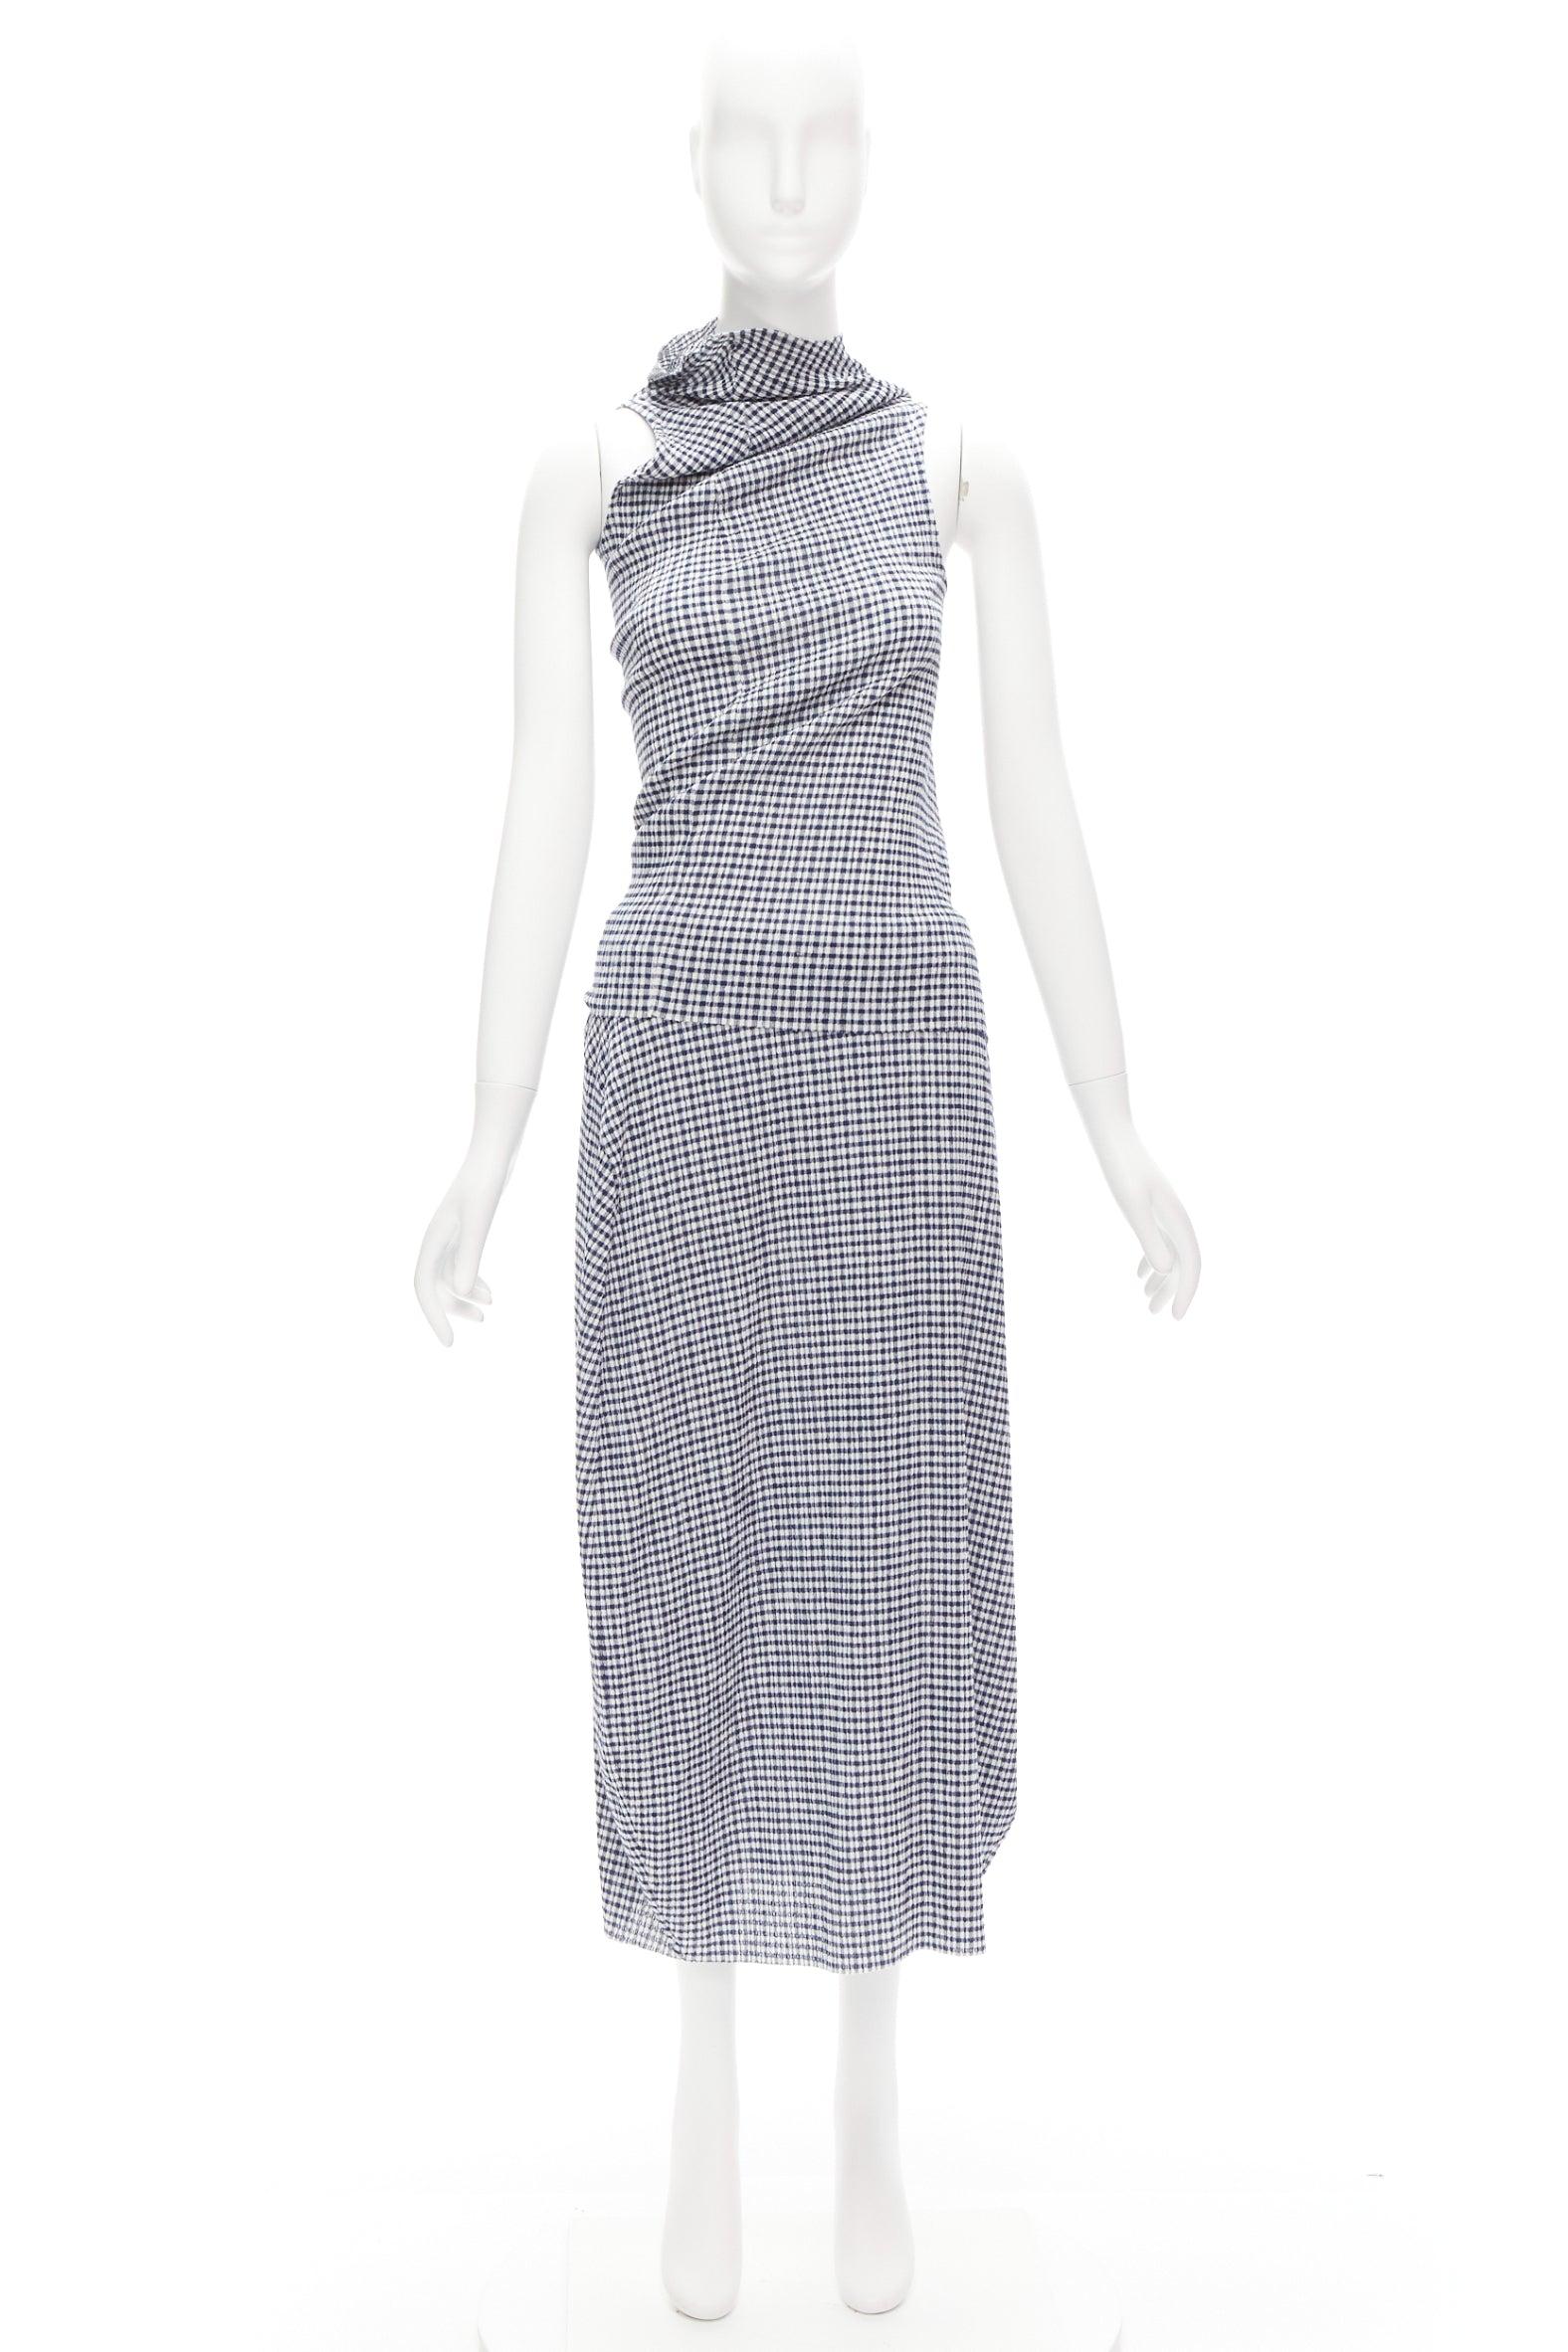 JIL SANDER blue white gingham crinkled asymmetric top skirt set FR34 XS 7